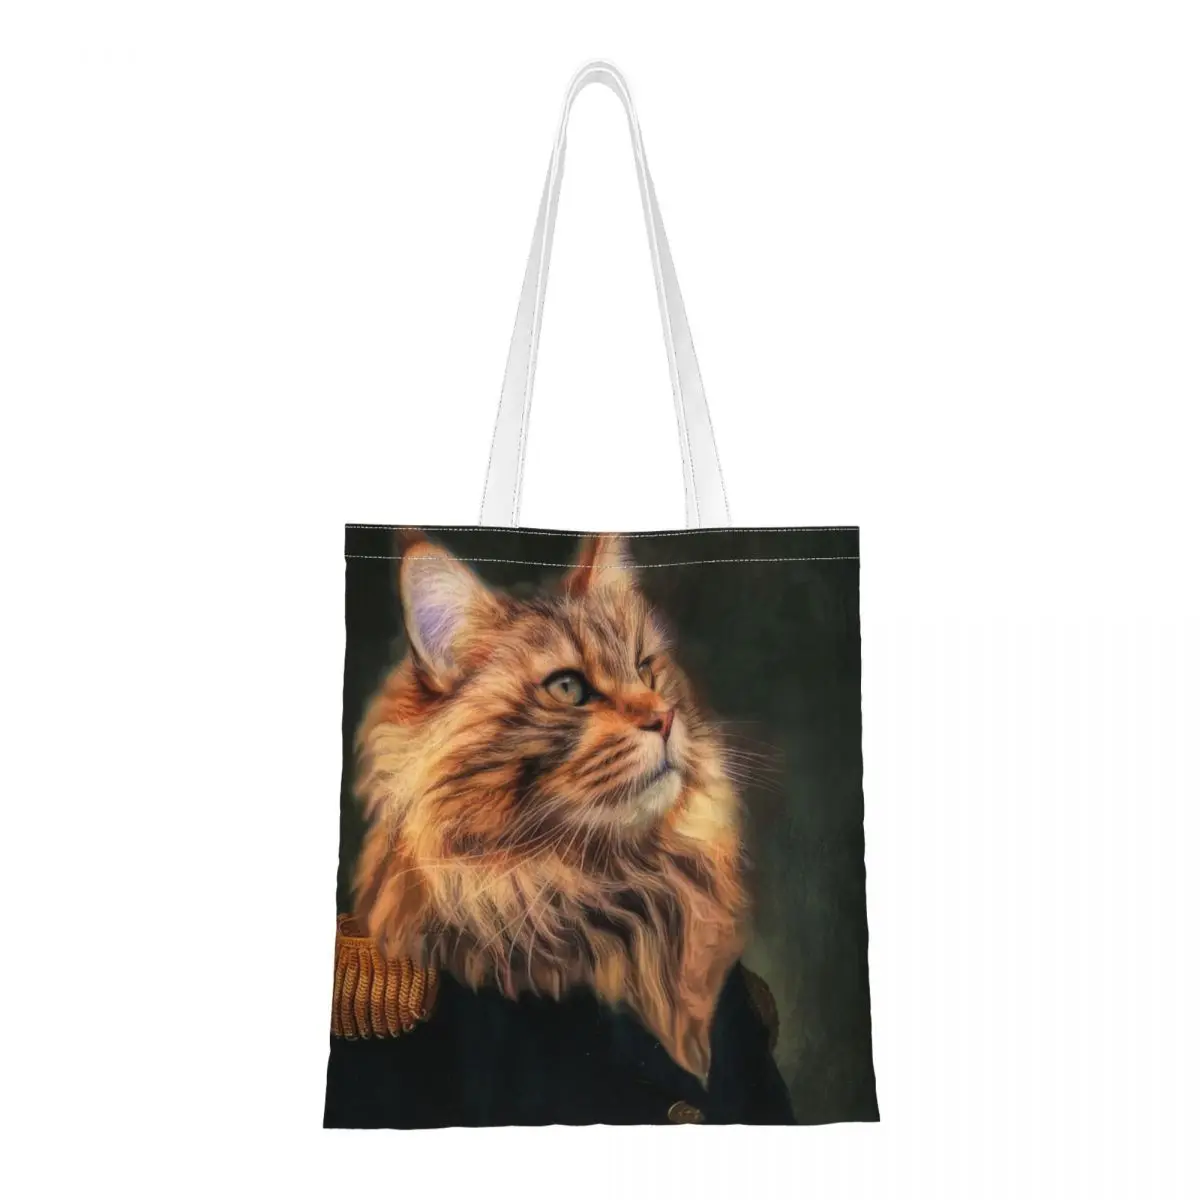 Kitty Kediler Pet Klasik Kraliyet omuz çantaları Tuval Alışveriş Çantaları Moda Büyük Kapasiteli Tuval Tote Çanta Katlanabilir Kanvas Çanta